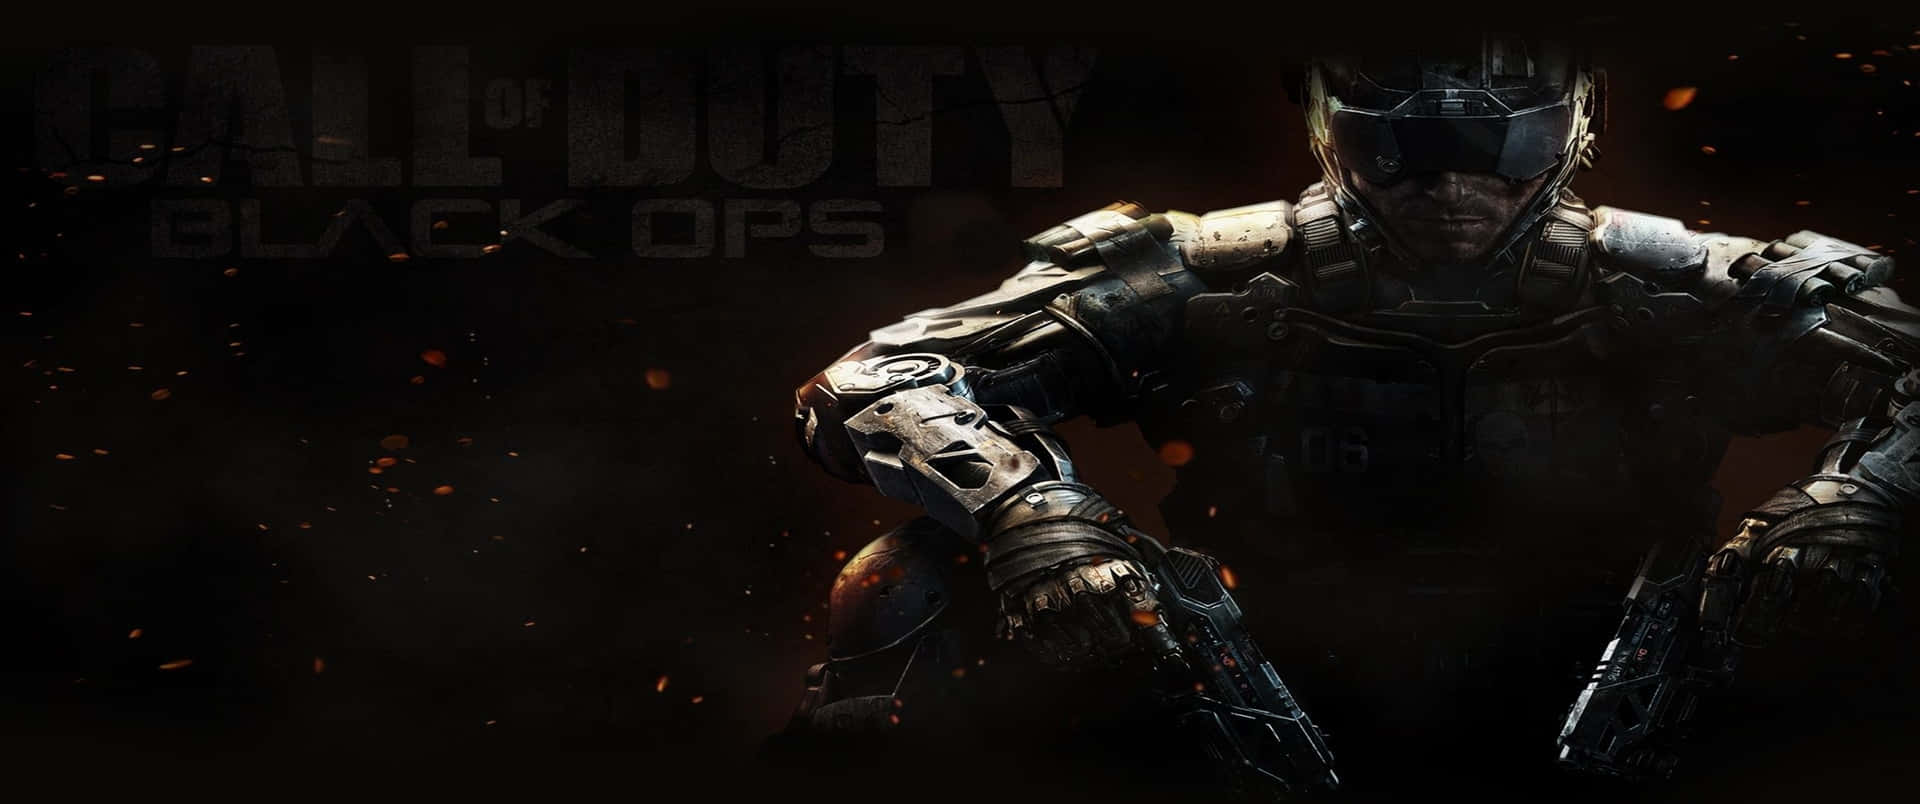 Futuristiskbakgrundsbild För Call Of Duty Black Ops Cold War I 3440x1440p.